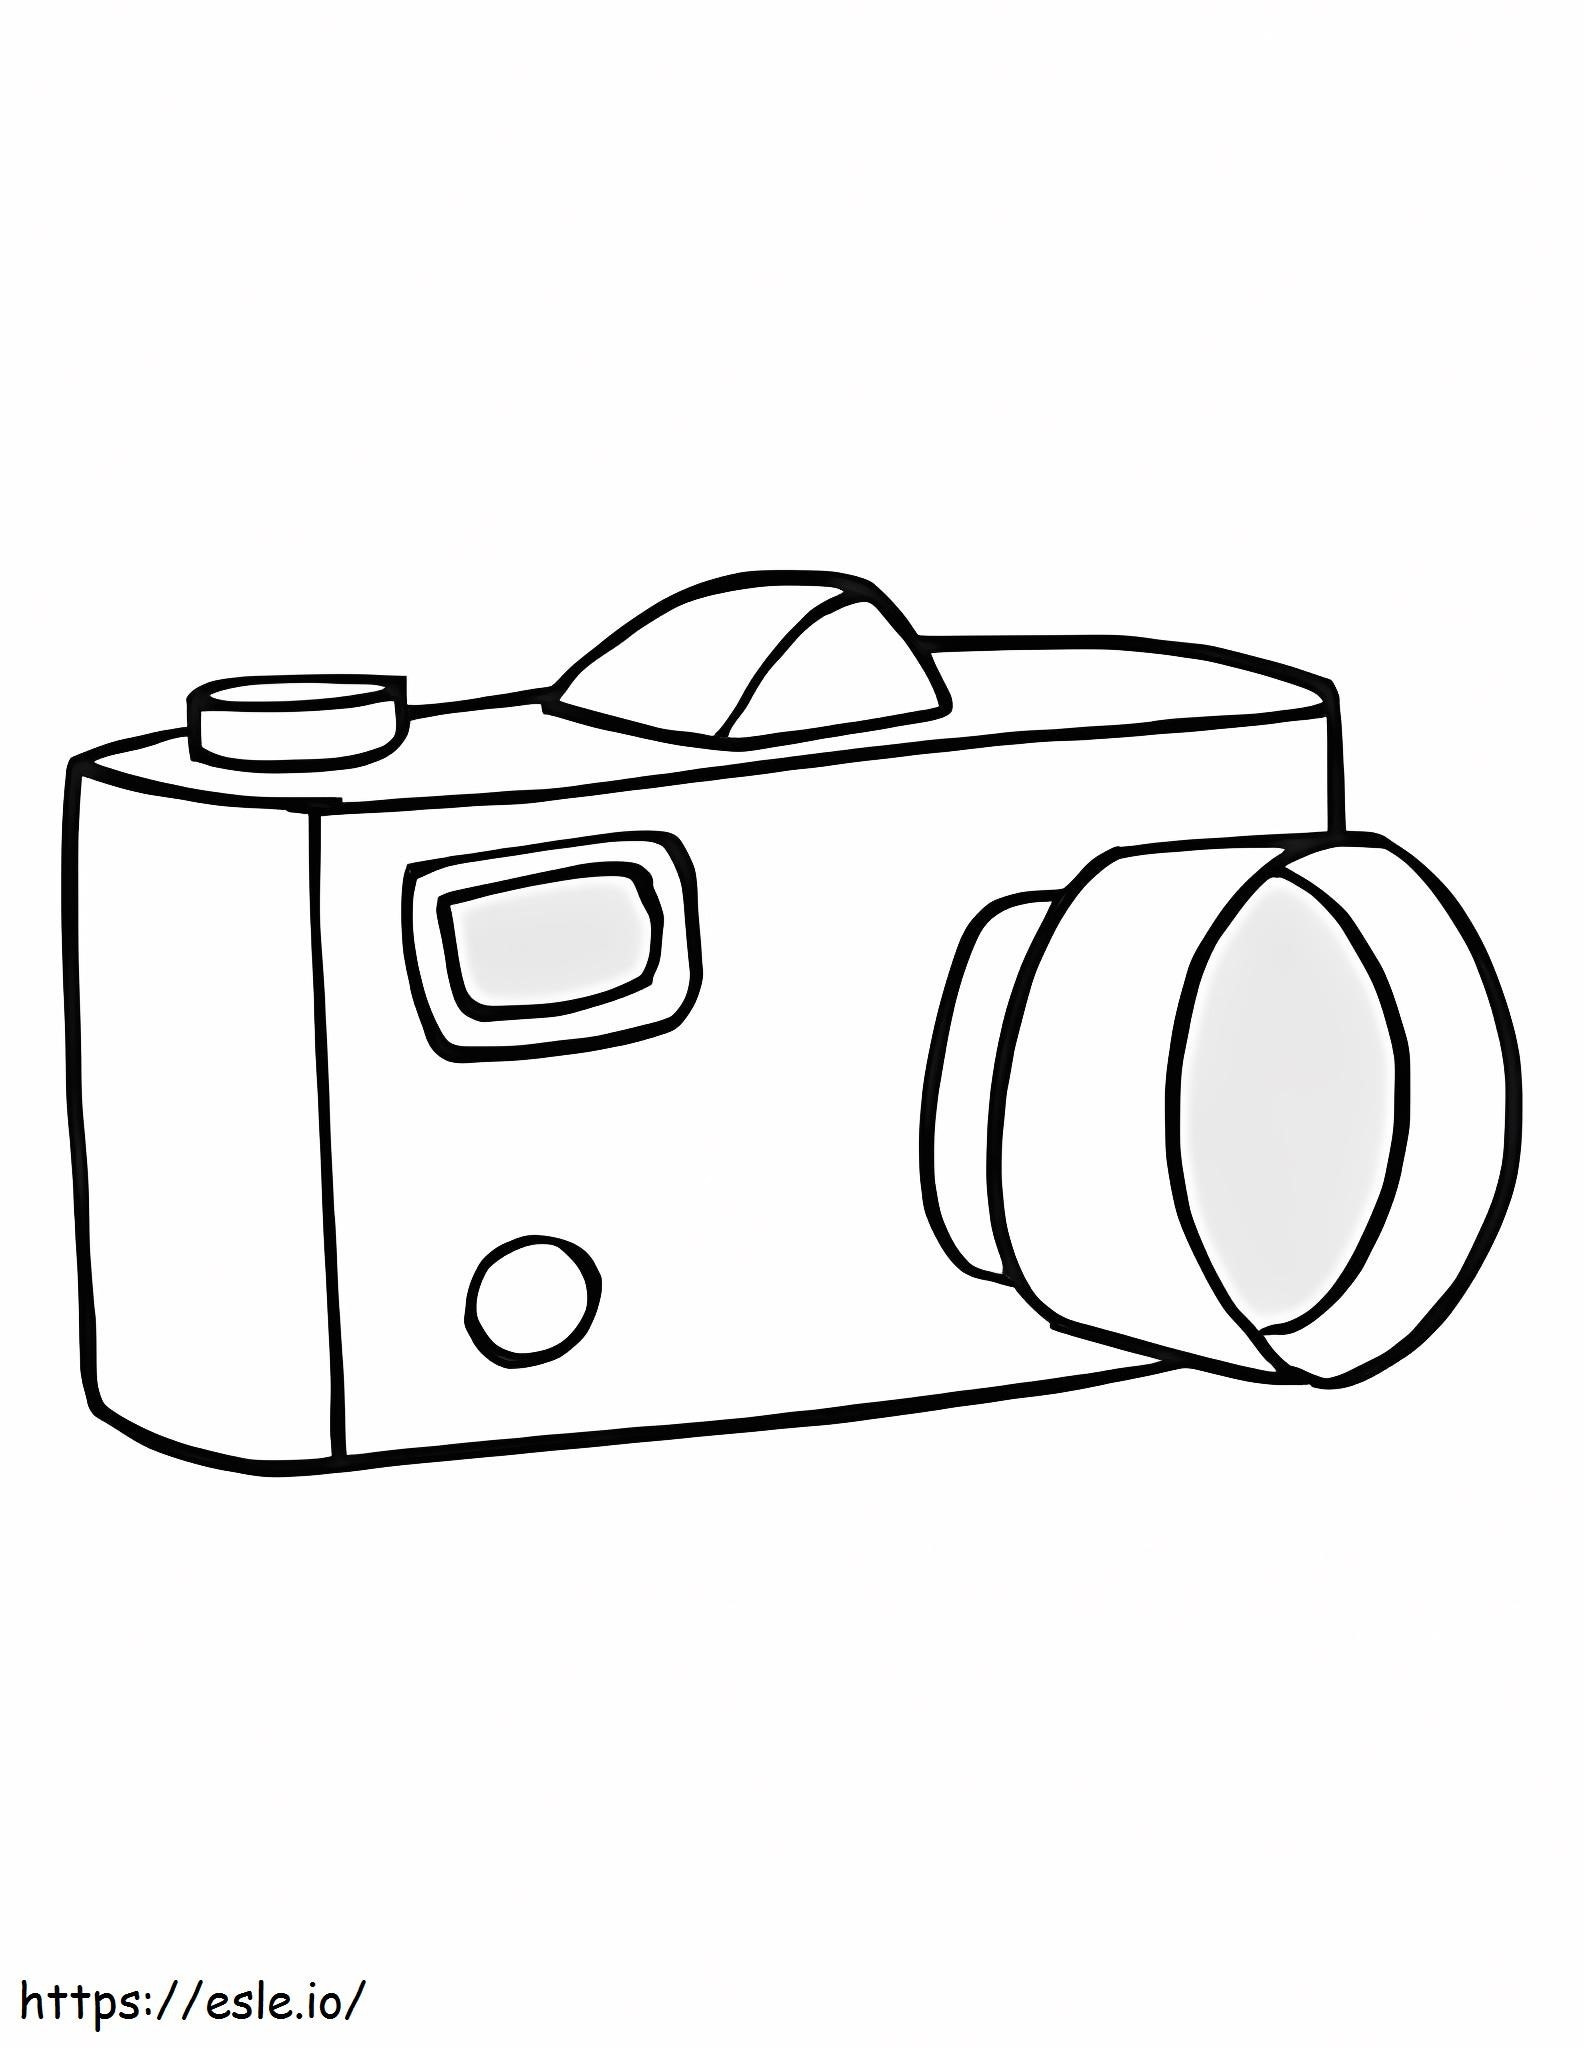 Câmera de desenho manual para colorir